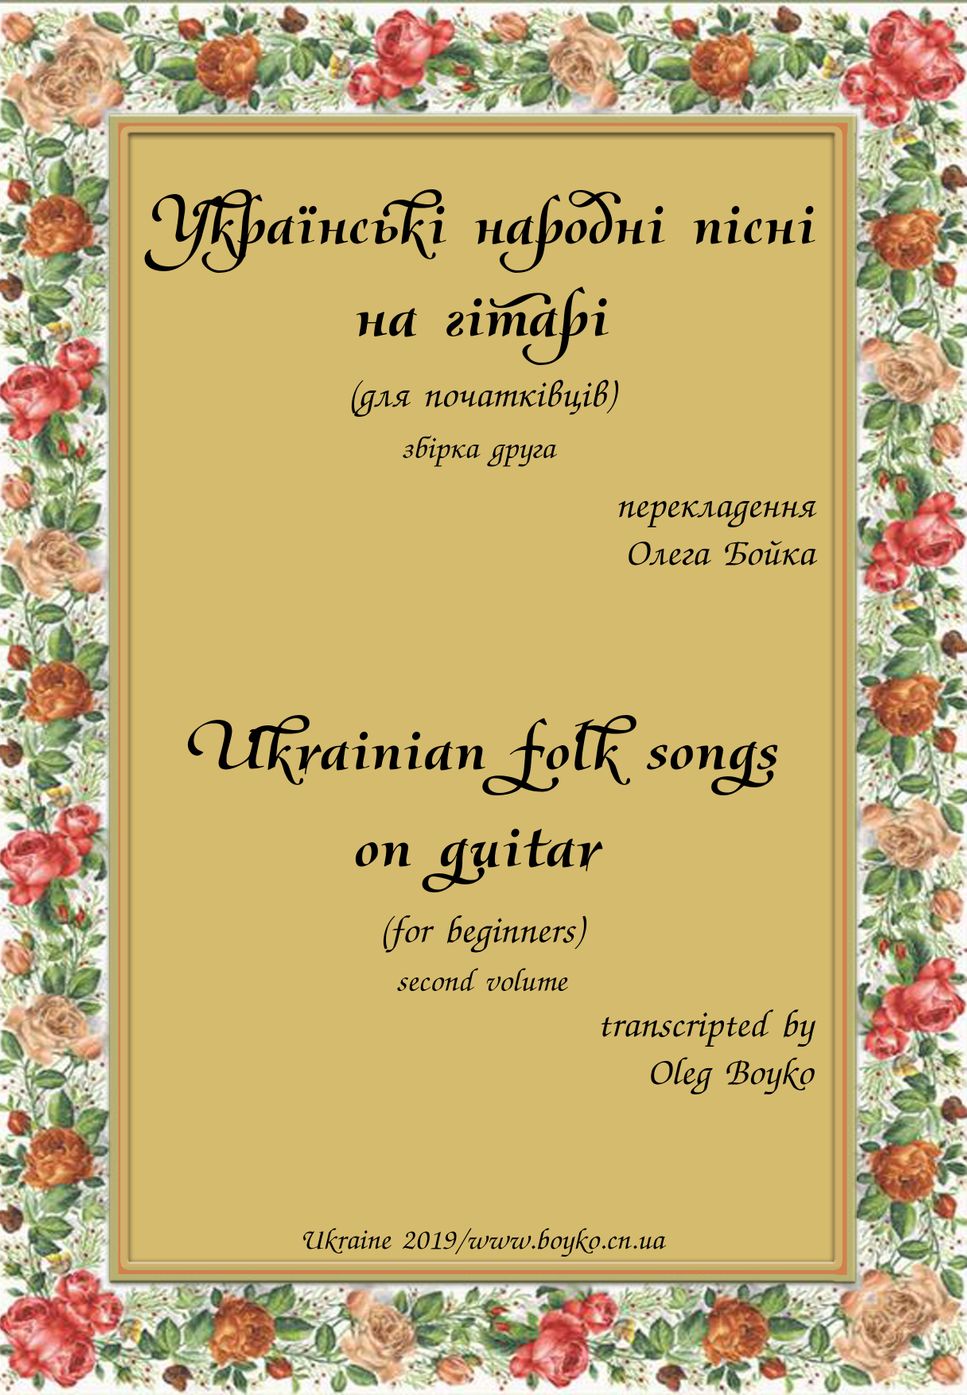 Ukrainian folk songs for beginners II